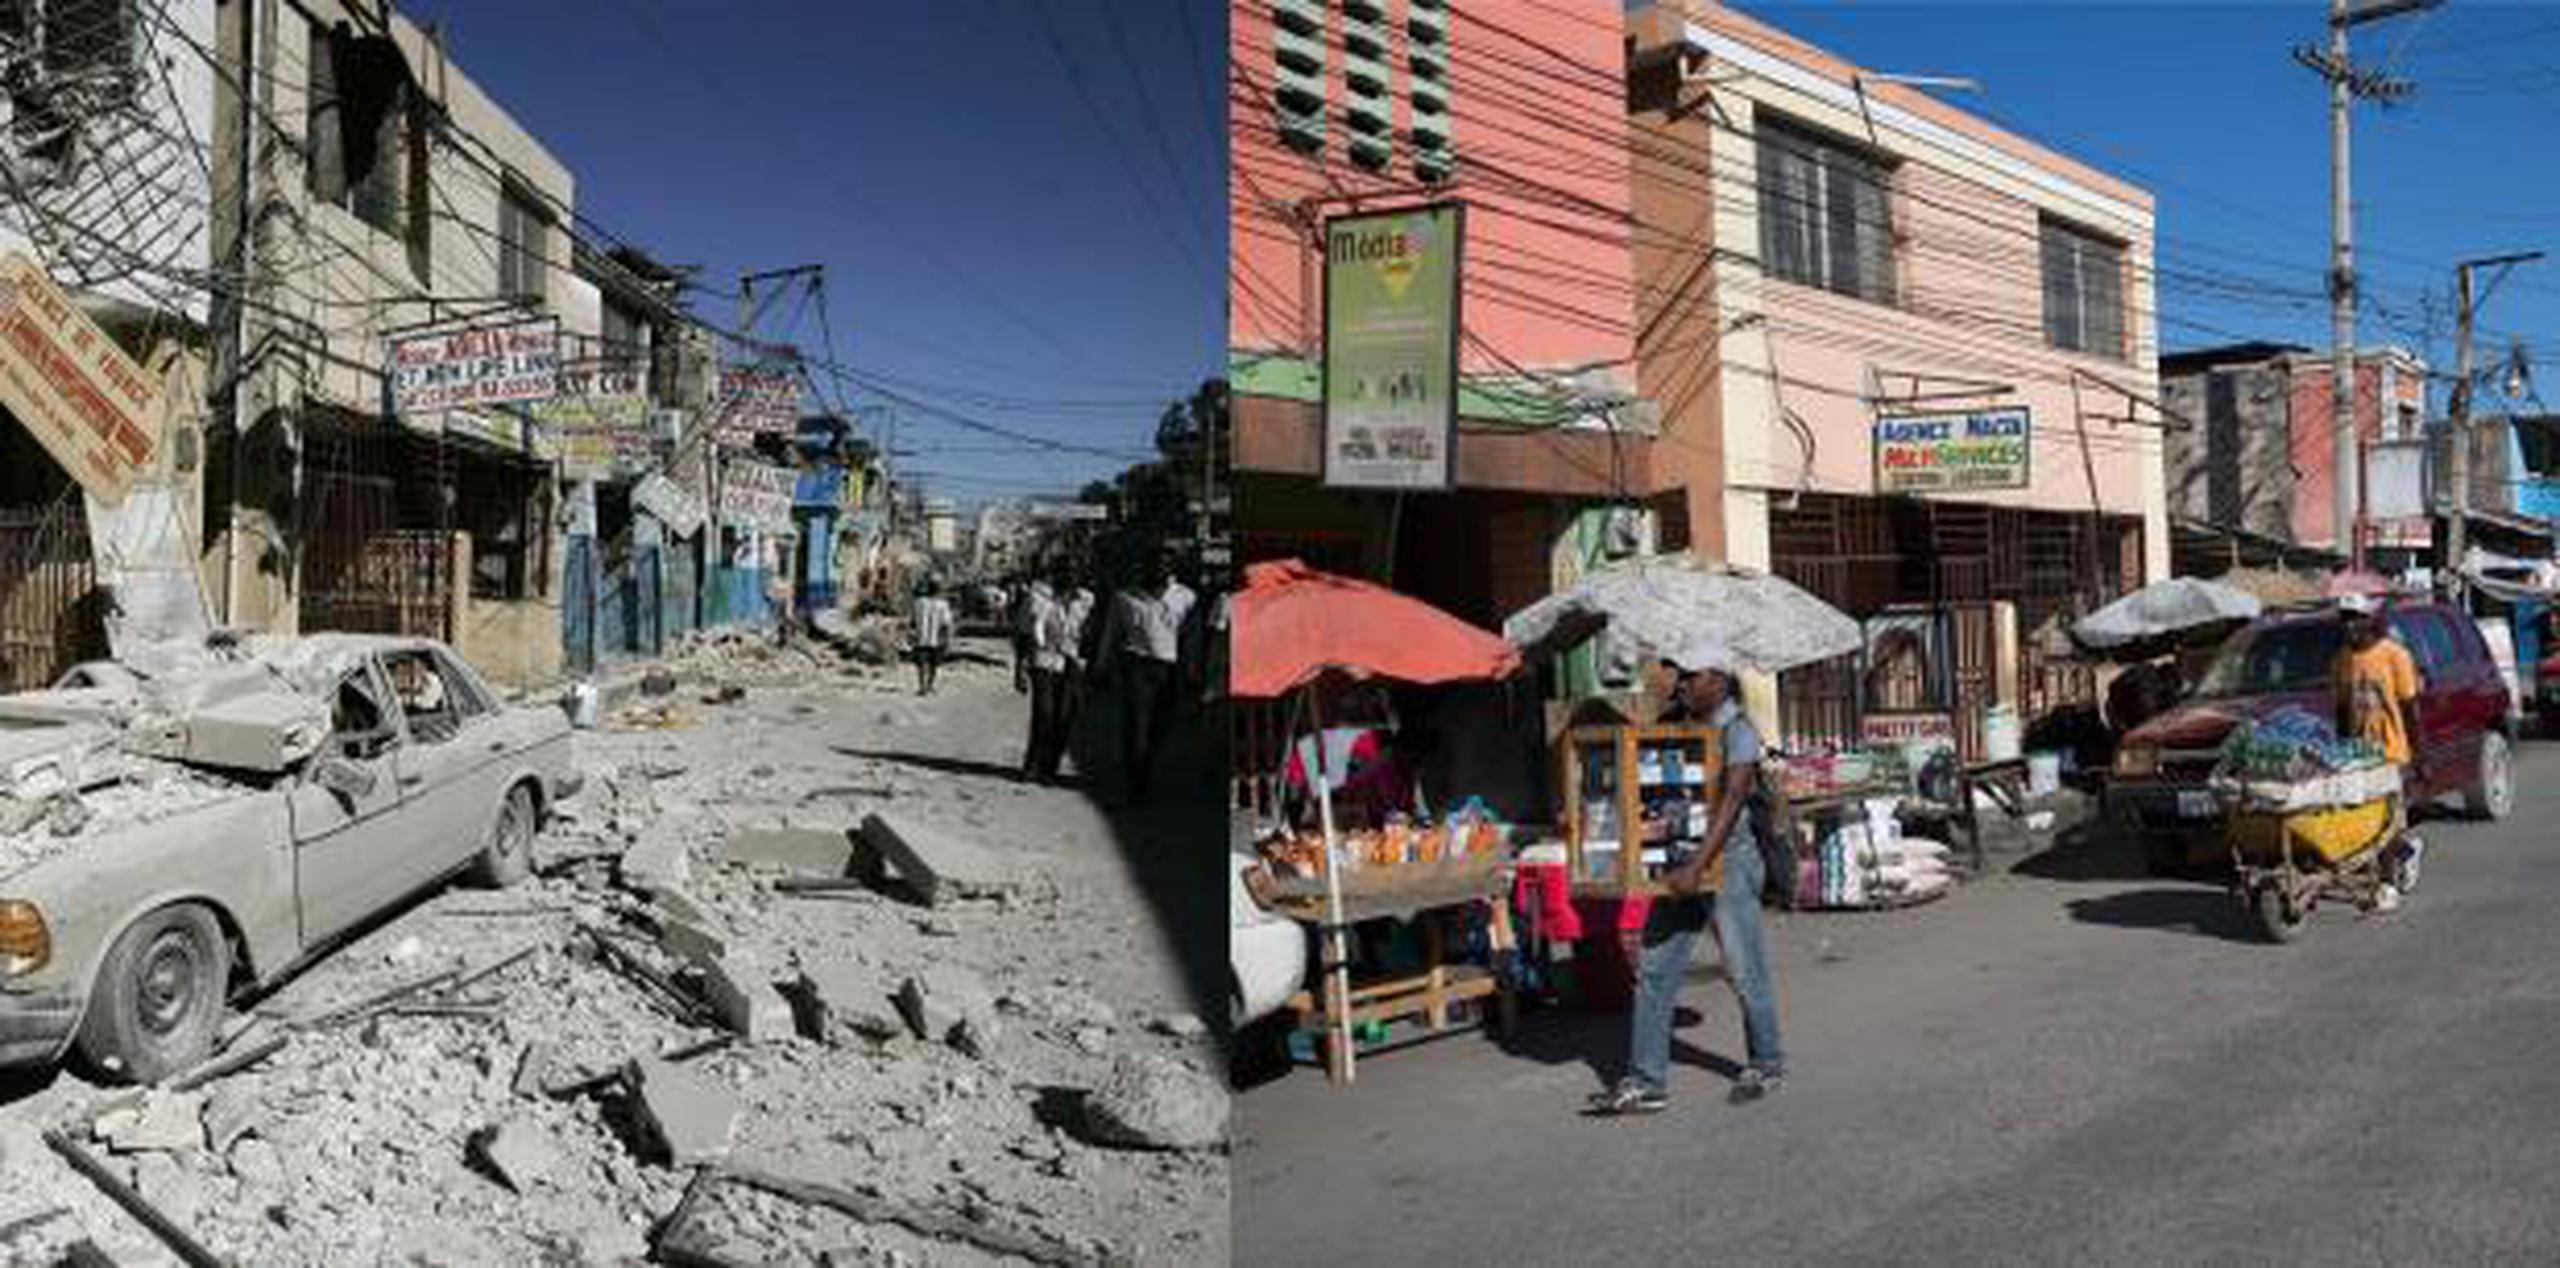 El 12 de enero ha sido declarado en Haití día de conmemoración y reflexión dedicado a la memoria de las víctimas del desastre causado por el terremoto que asoló el país el 12 de enero de 2010. (EFE)